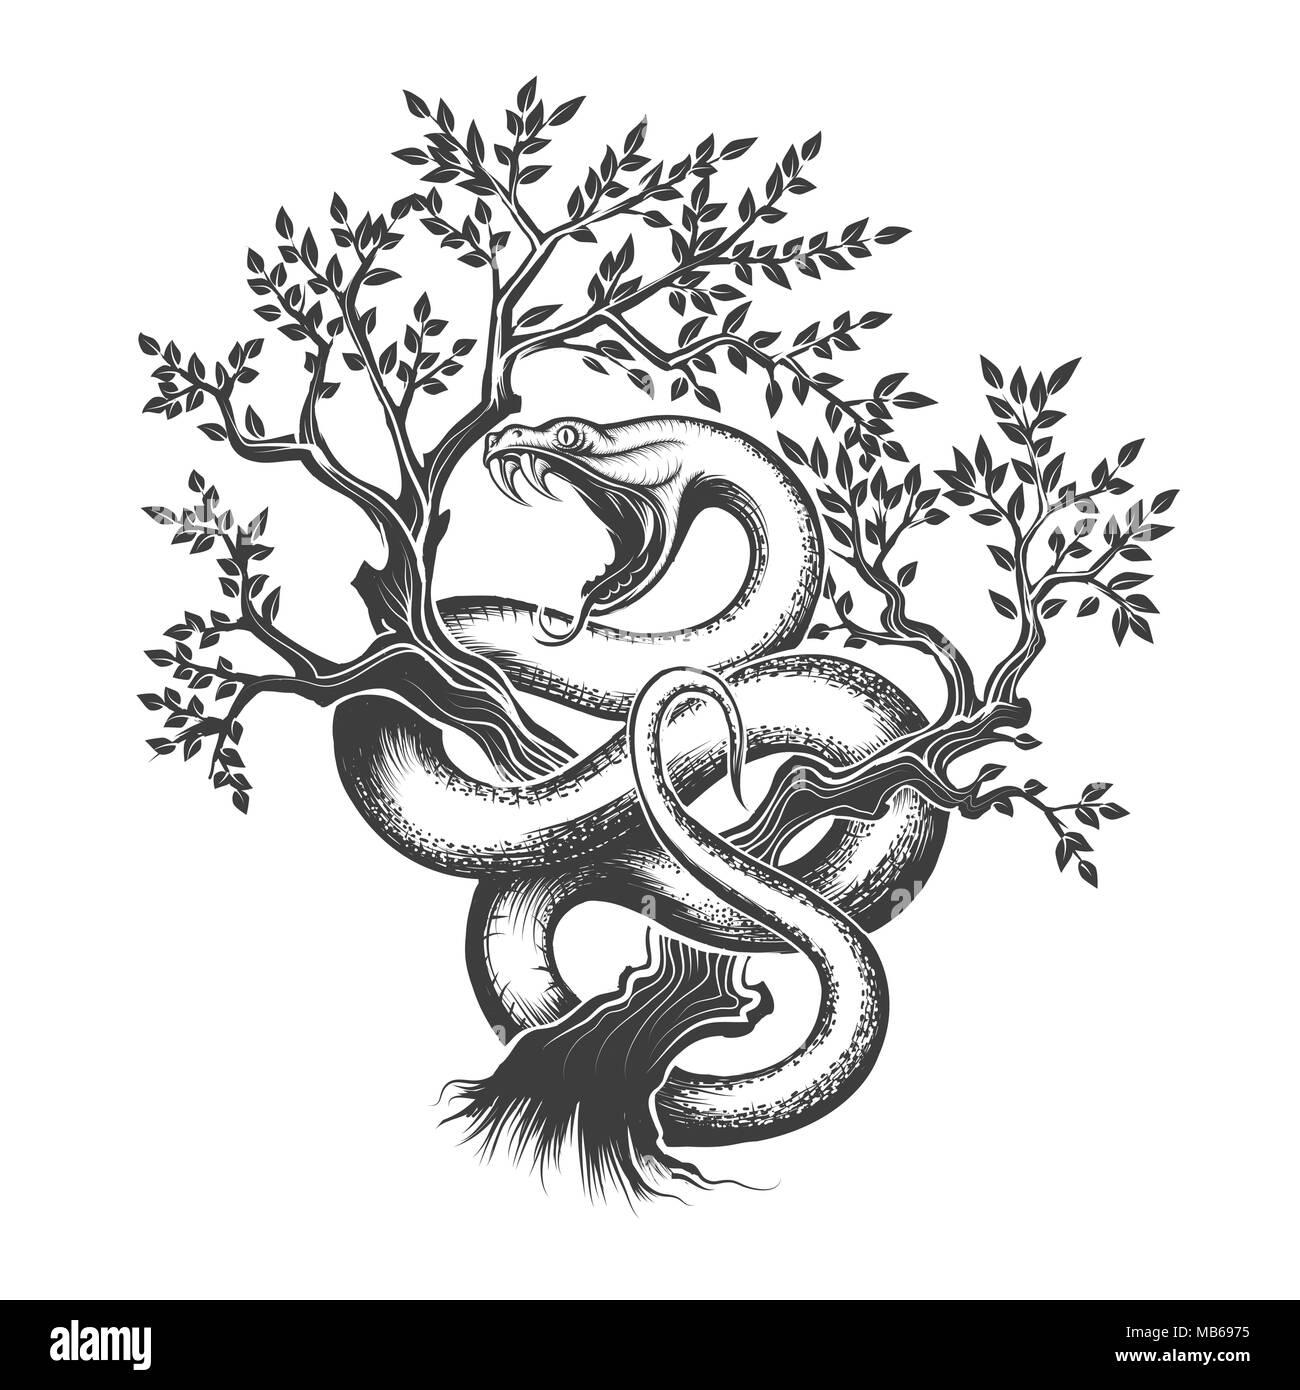 Serpent avec la bouche ouverte en rampant jusqu'à l'intérieur un arbre dessiné dans leur gravure. Vector illustration. Illustration de Vecteur